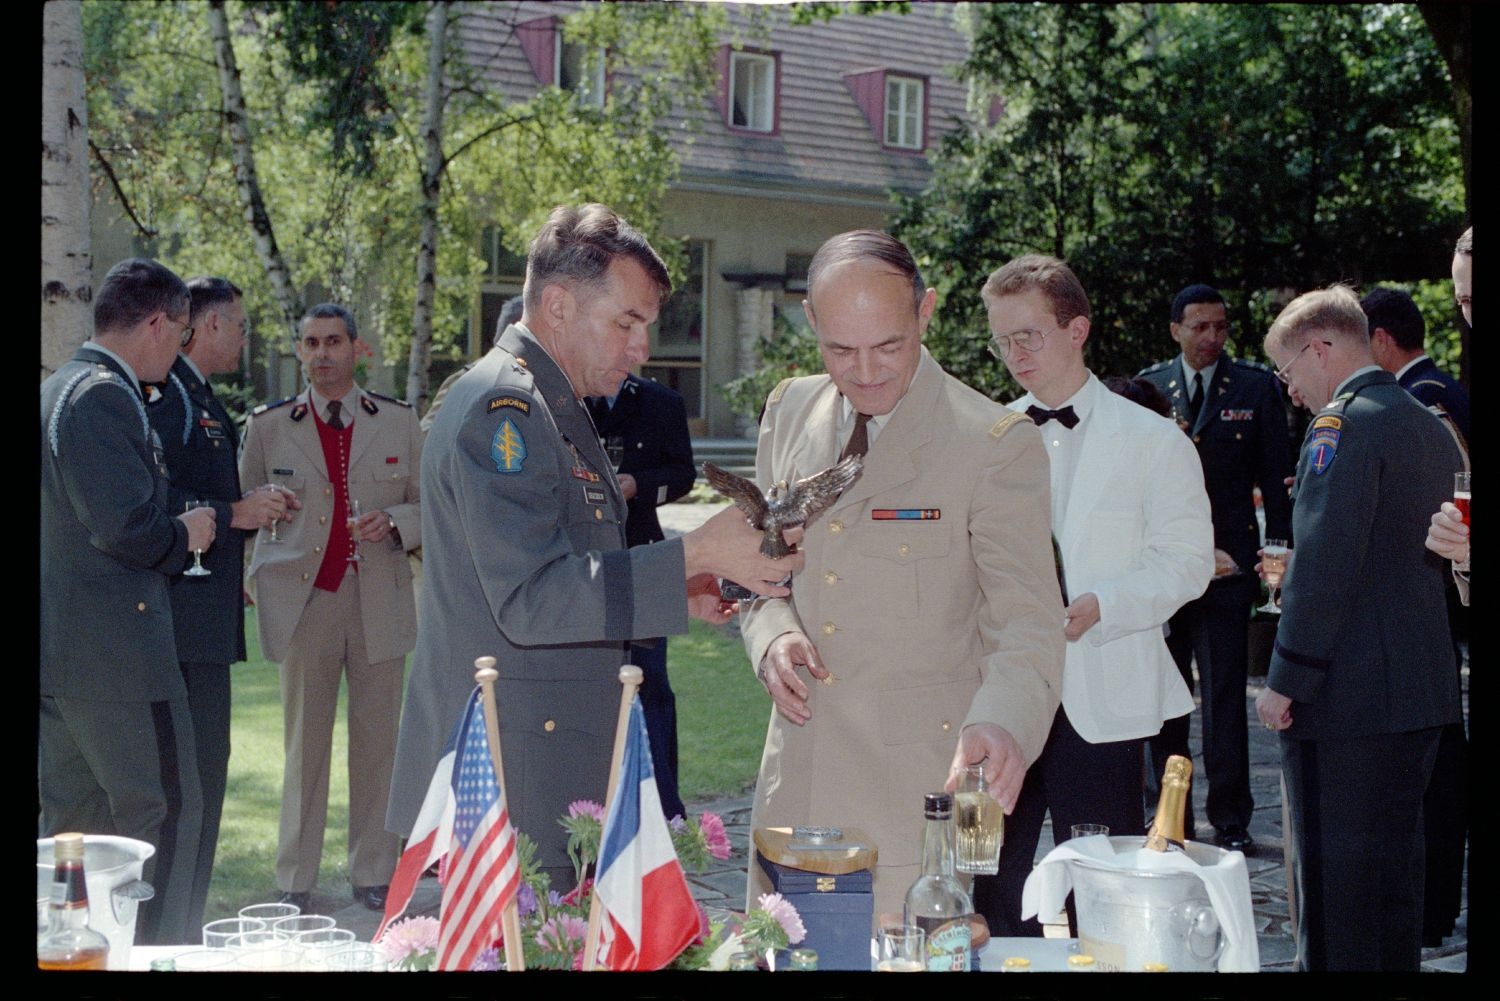 Fotografie: Besuch von Brigadier General Sidney Shachnow im Quartier Napoléon in Berlin-Reinickendorf (AlliiertenMuseum/U.S. Army Photograph Public Domain Mark)